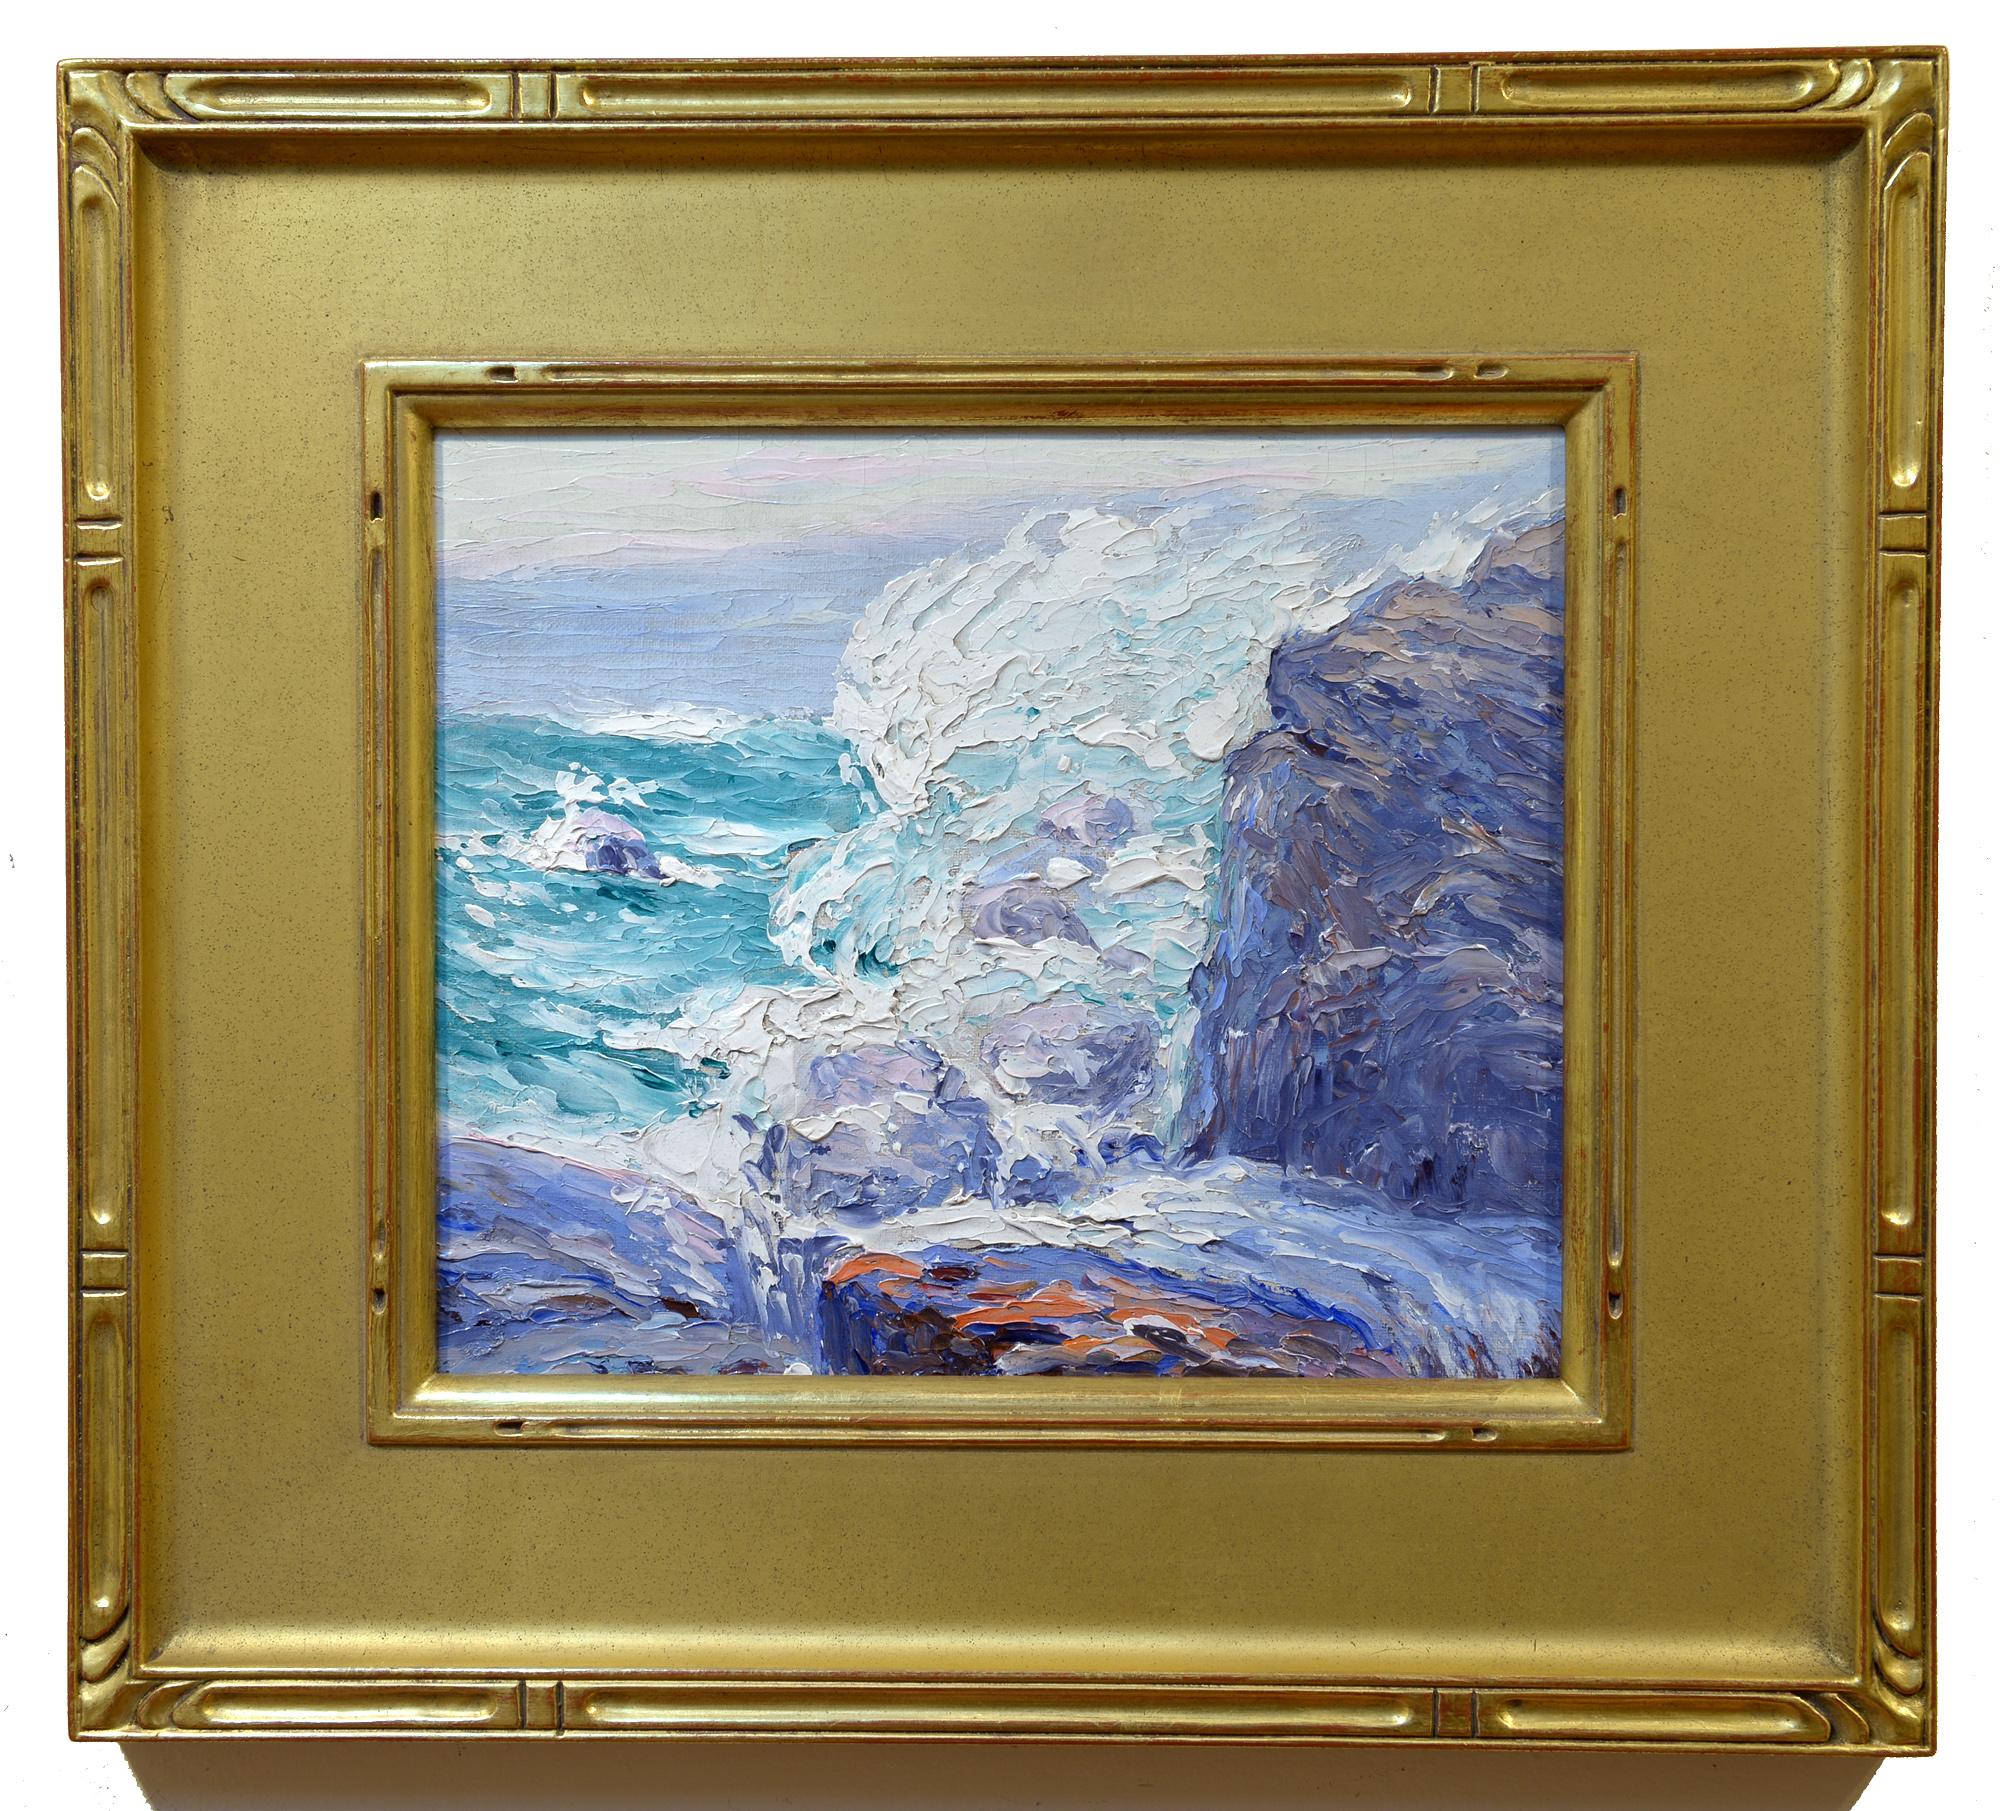 Sea Spray, Maine Coast, Impressionist, Oil on Board, Seascape - Painting by Sigurd Skou